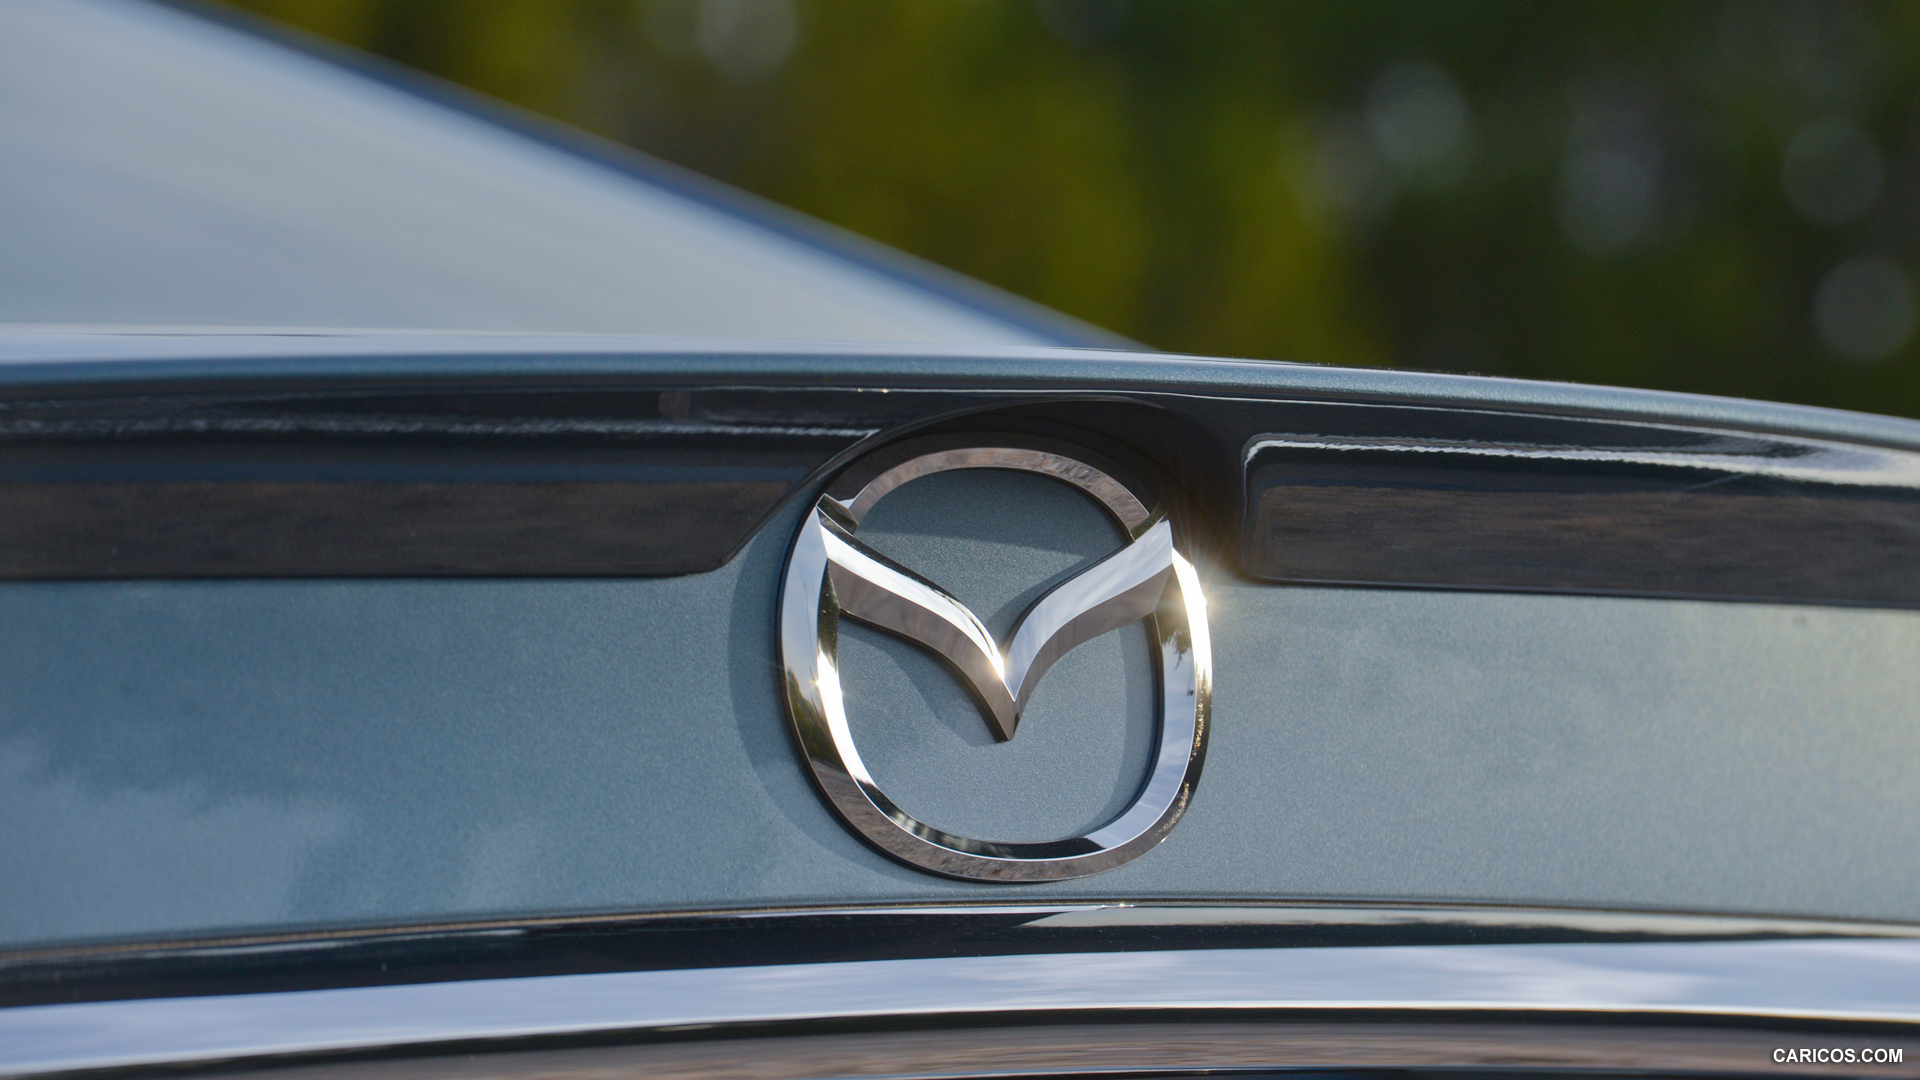 2014 Mazda6 GT - Badge, #151 of 179